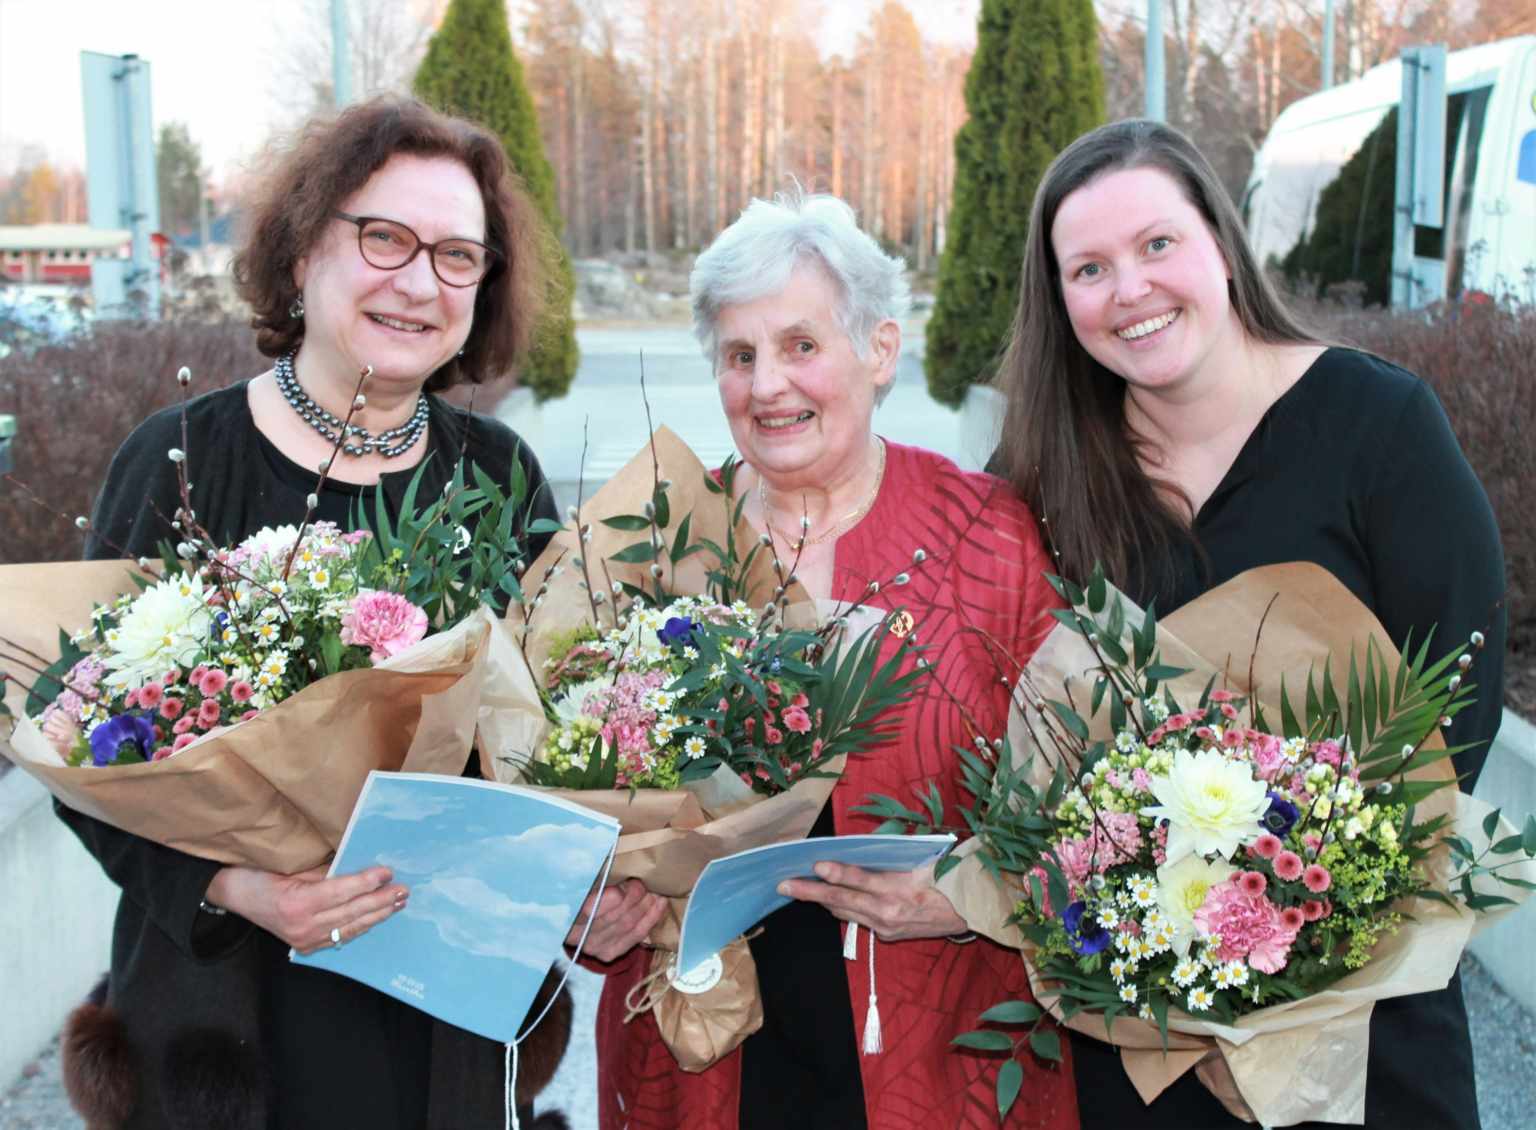 Anki Sipilä tilldelades utmärkelsen Årets samhällsinsats, Ruth marthaförening tilldelades utmärkelsen Årets eldsjäl och Margaretha Björk tilldelades utmärkelsen Årets Lucina.